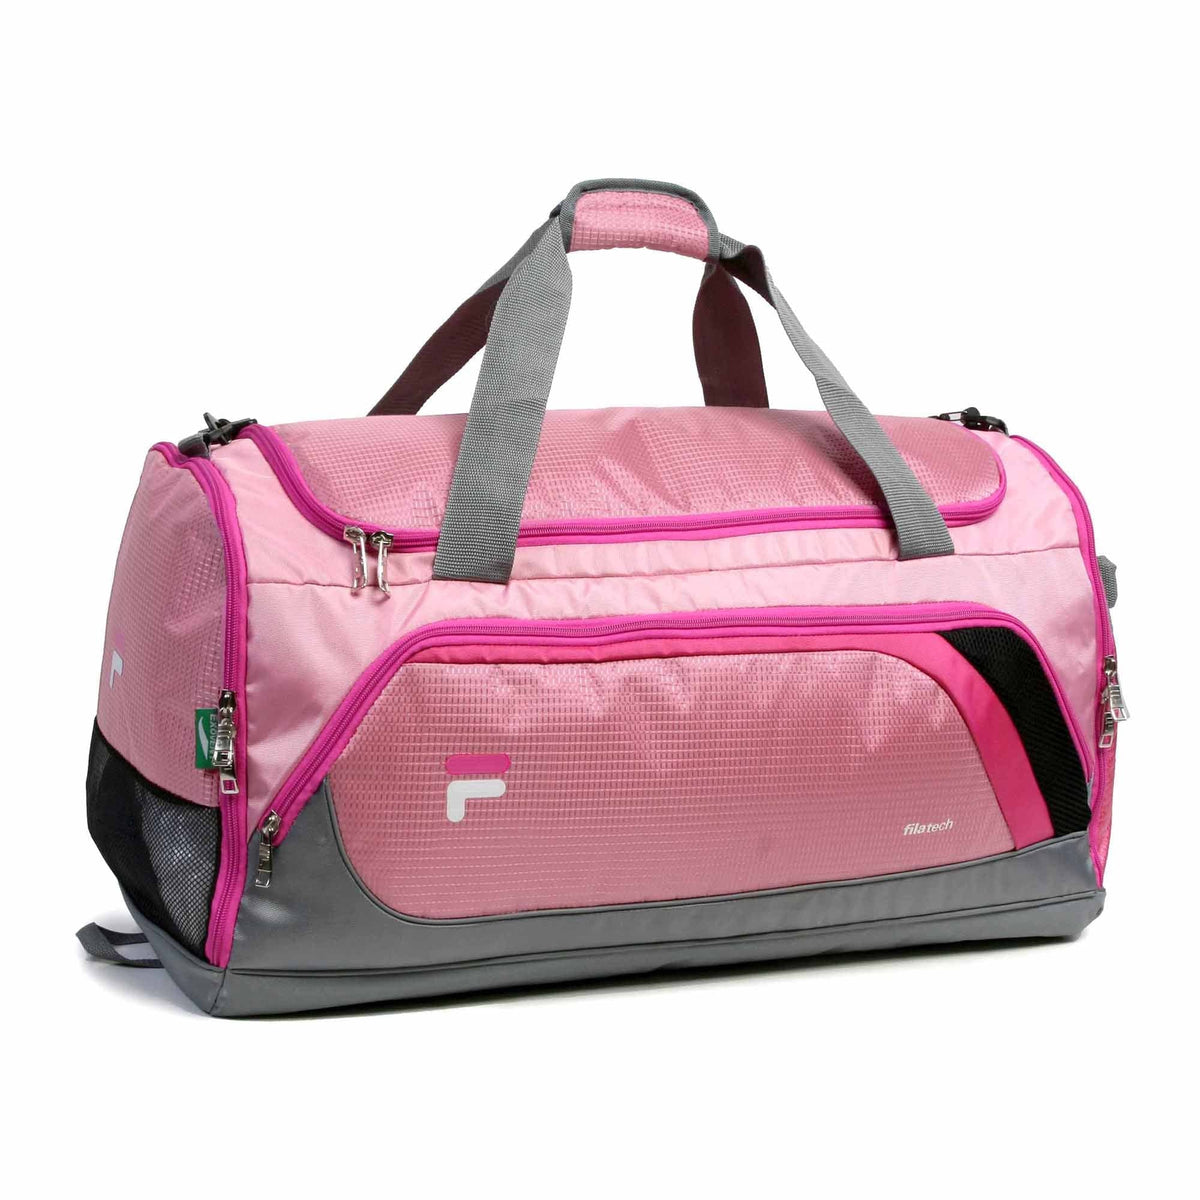 Fila Advantage Small Sport Duffel Bag